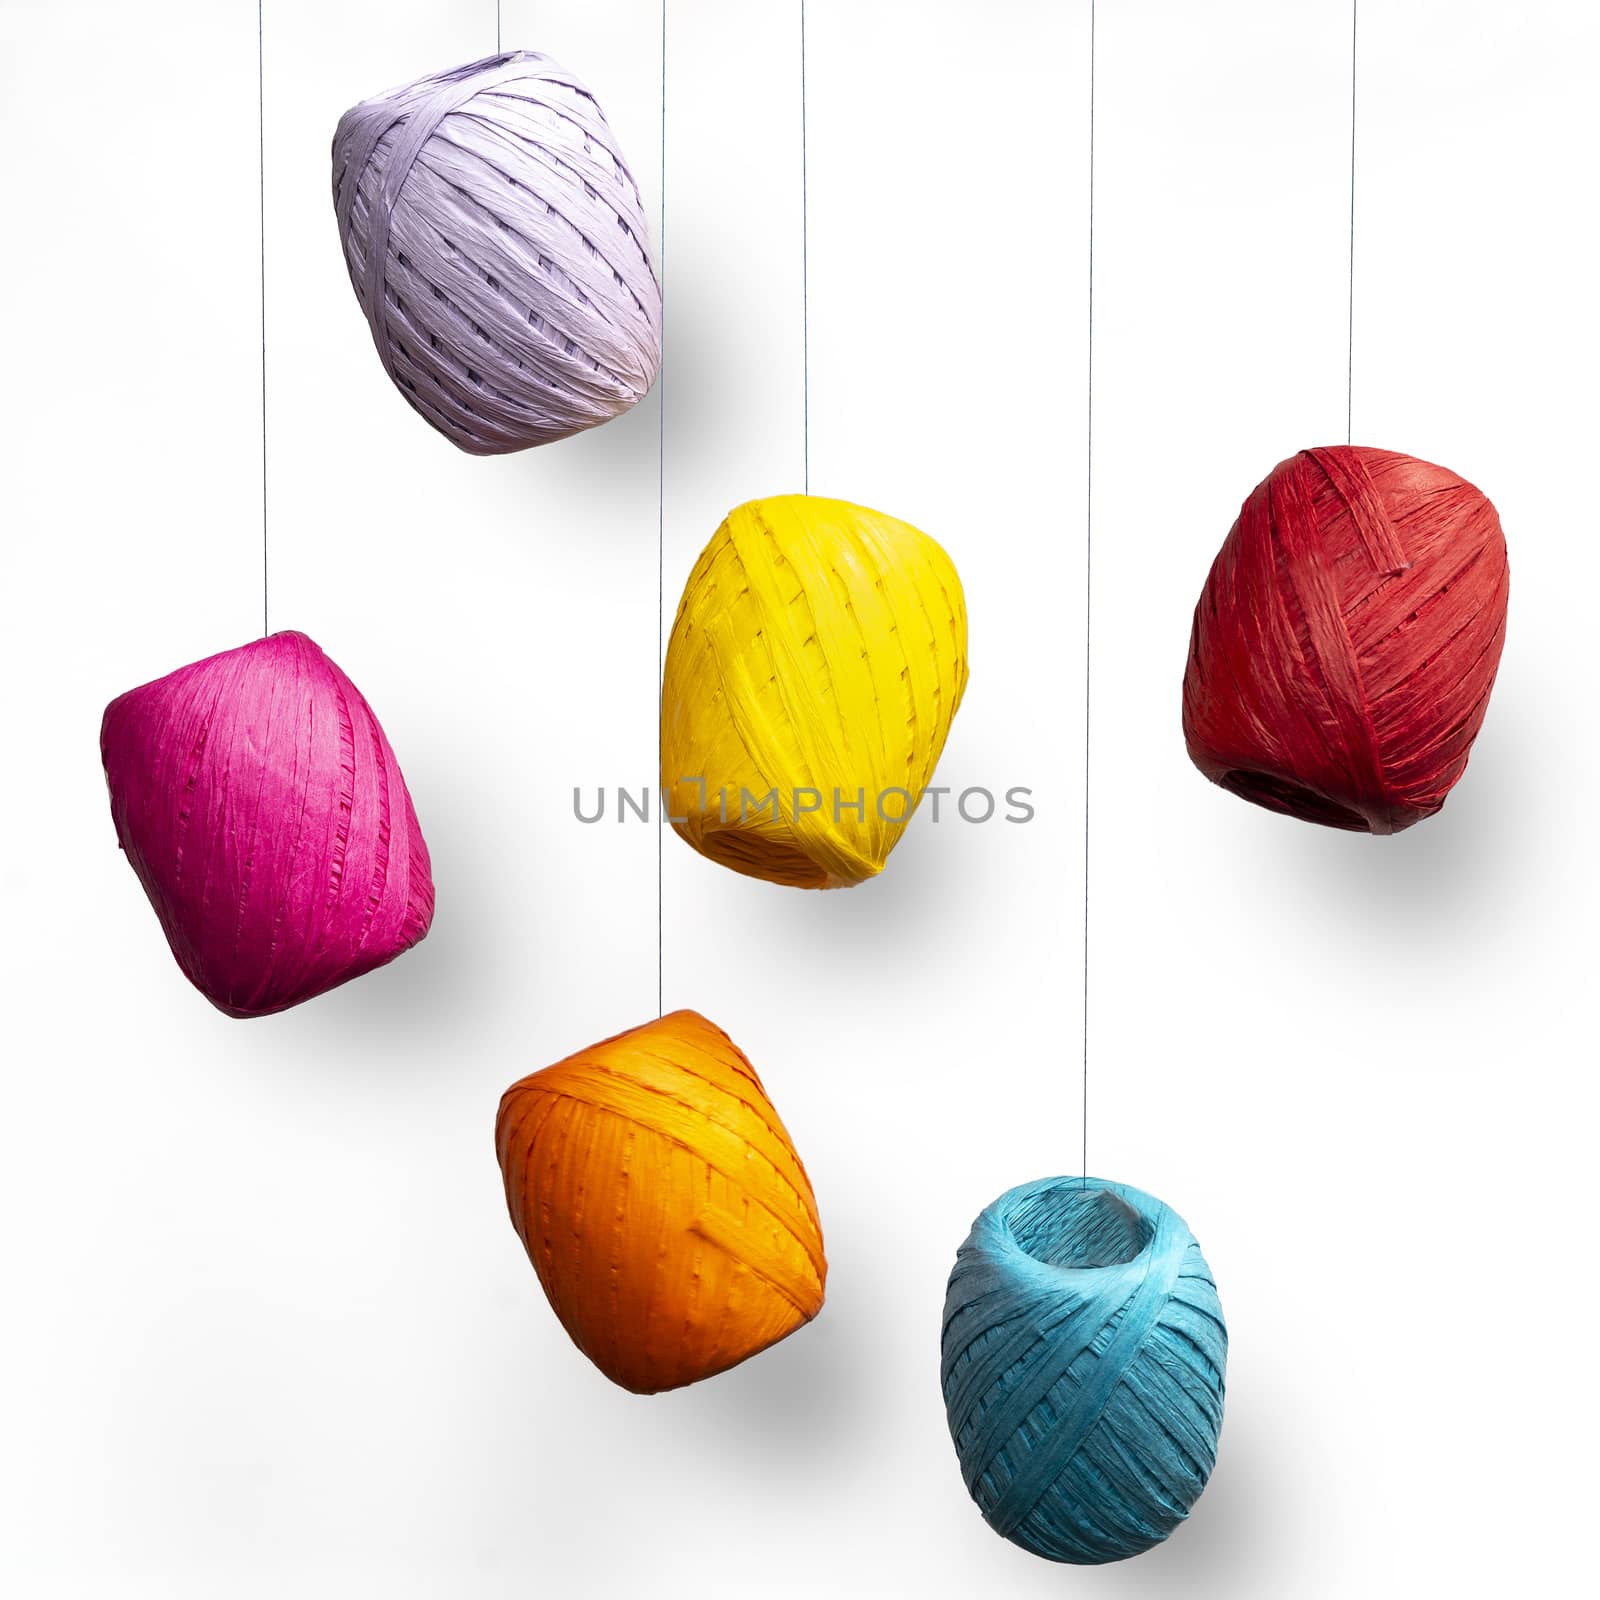  colored raffia balls by sergiodv